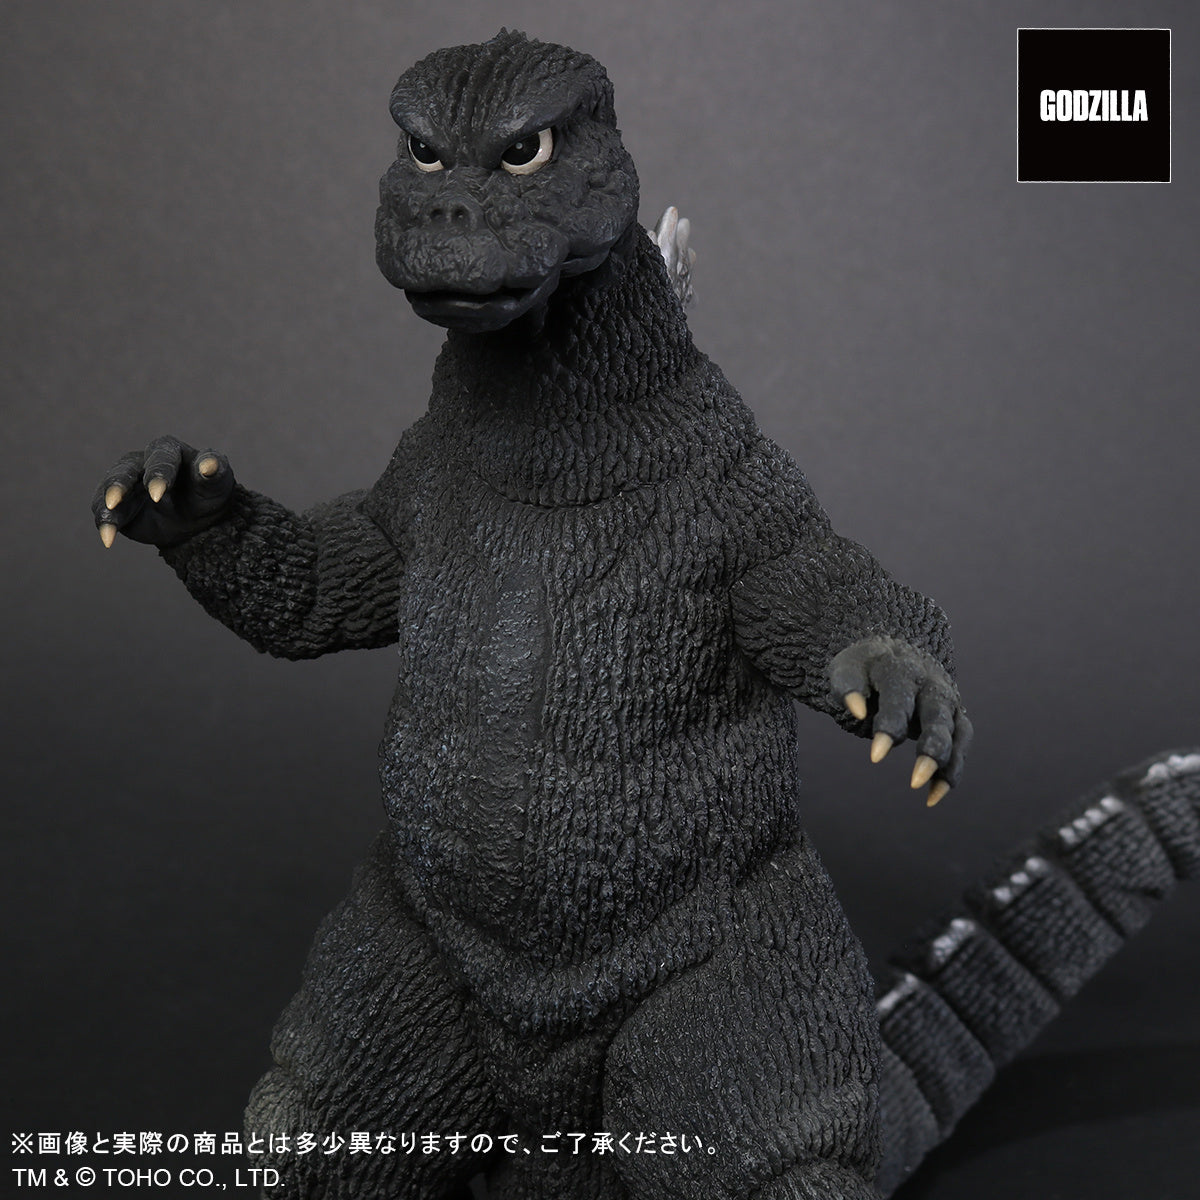 X-Plus - Toho 30cm Series - Favorite Sculptors Line - Godzilla vs. Mechagodzilla (1974) - Godzilla